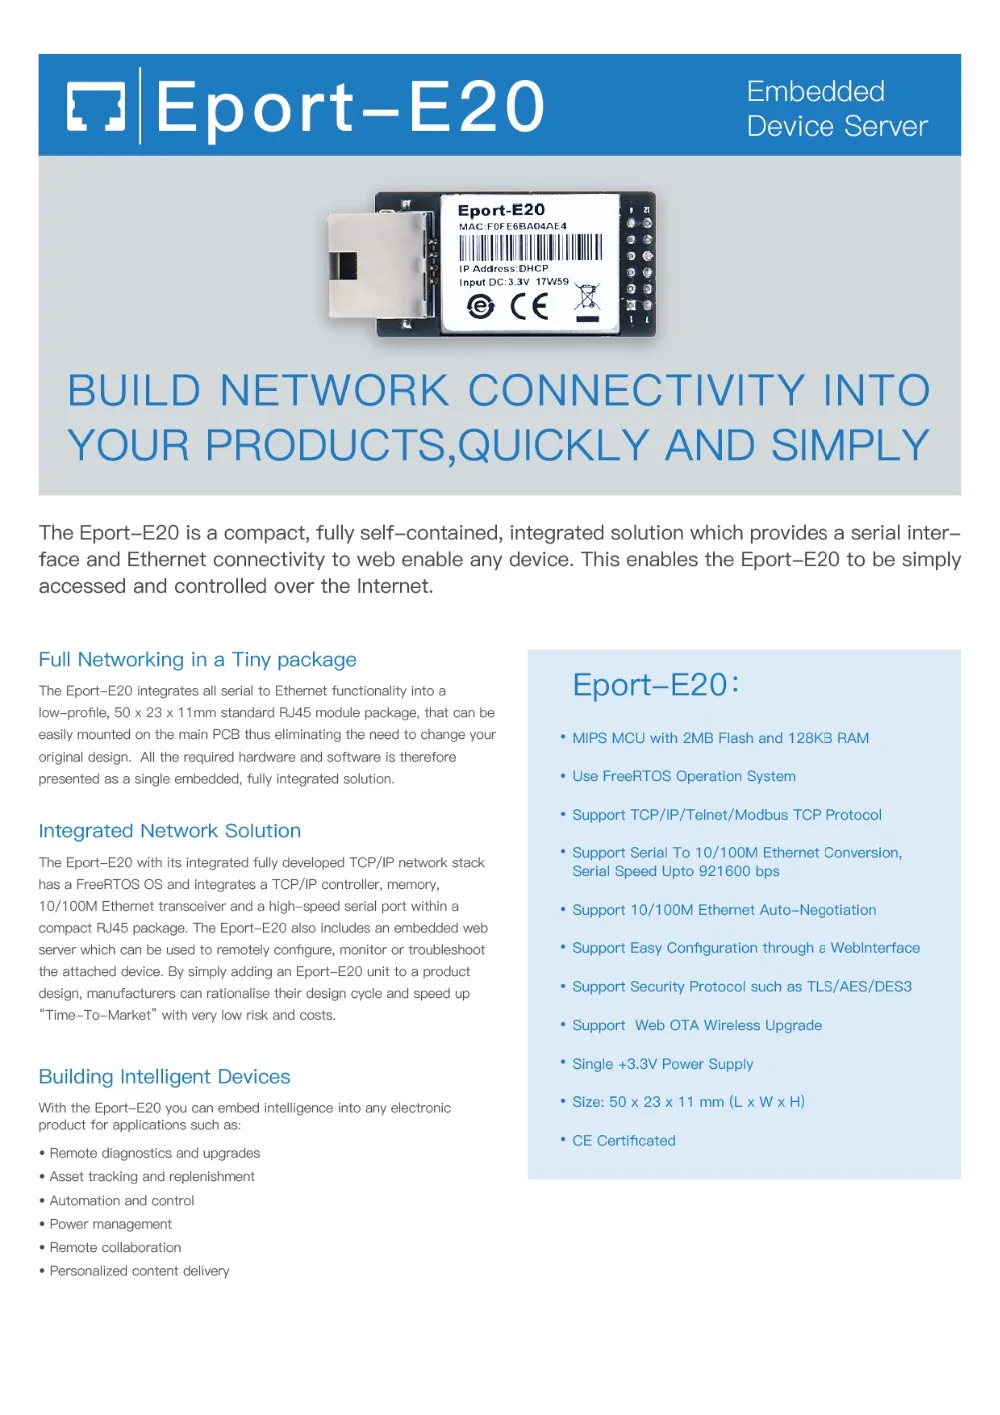 FreeRTOS сетевой сервер порт ttl последовательный в Ethernet встроенный модуль E Порт-E20 DHCP 3,3 В TCP IP Telnet Modbus TCP протокол